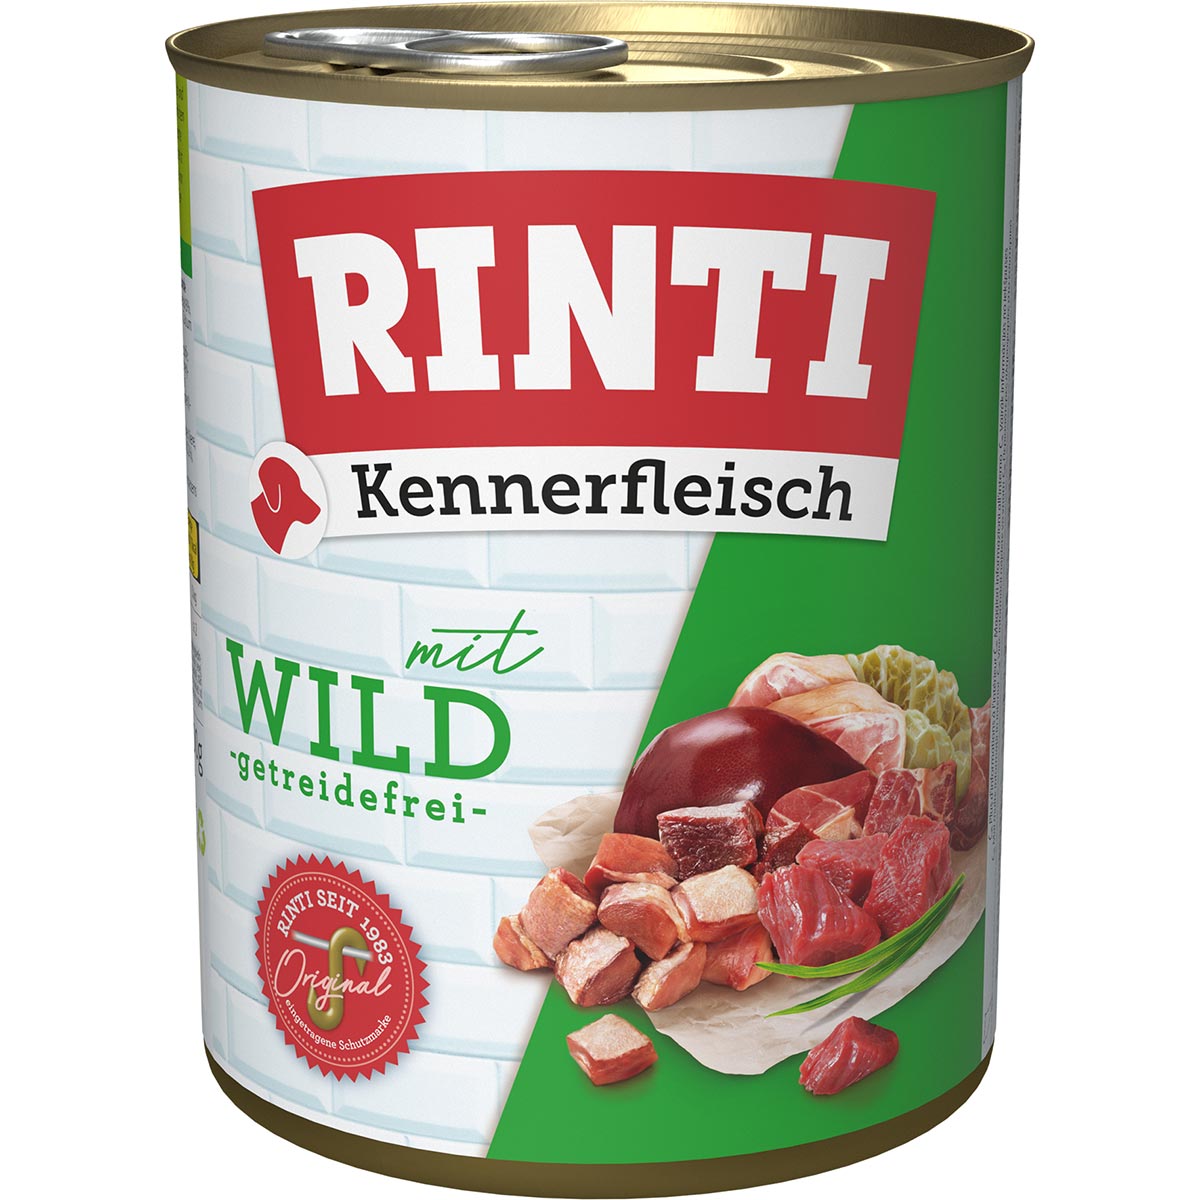 Rinti Kennerfleisch Wild 12x800g von Rinti